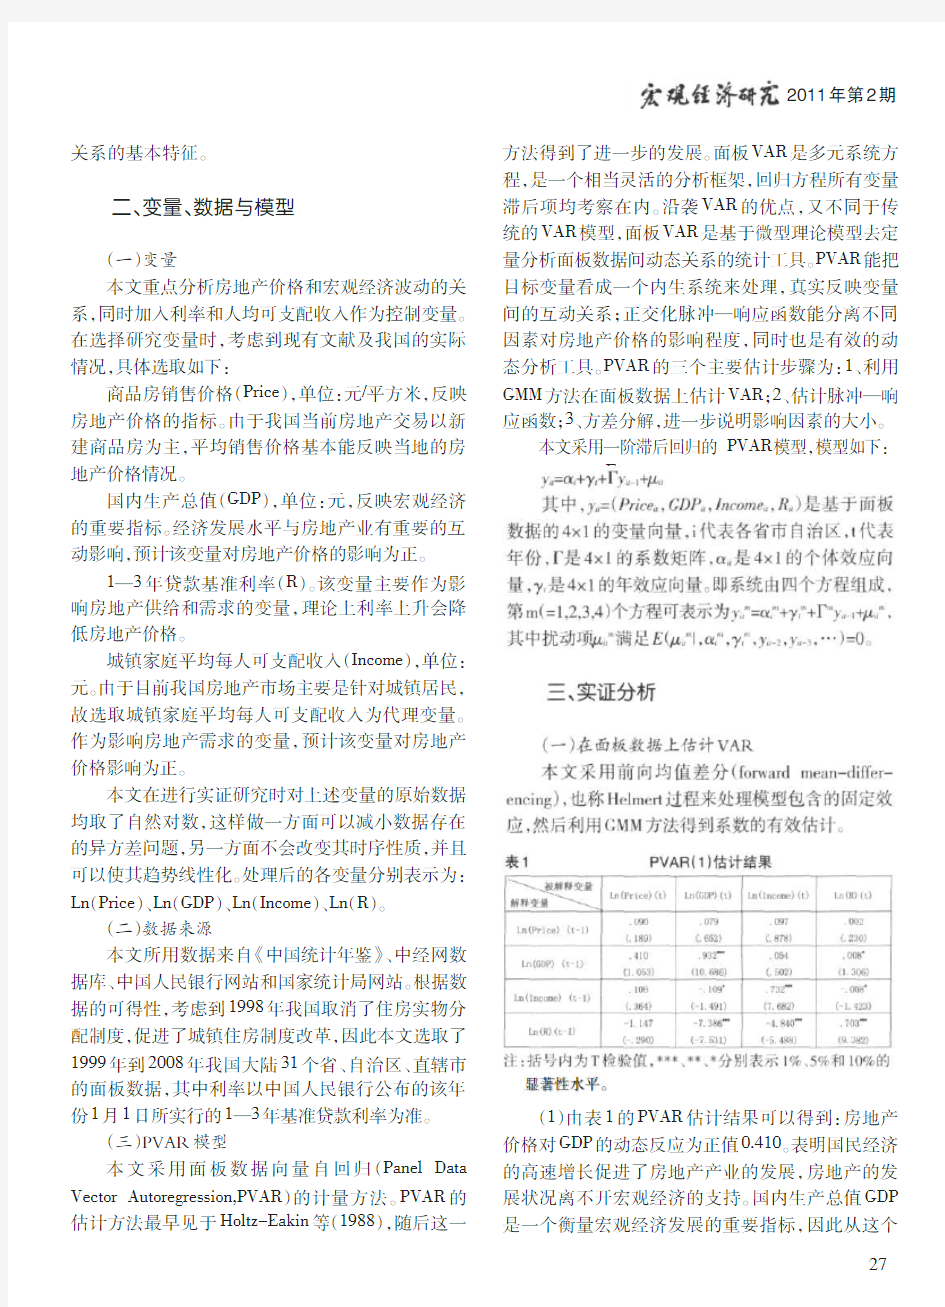 中国房地产价格与宏观经济波动_基于PVAR模型的研究